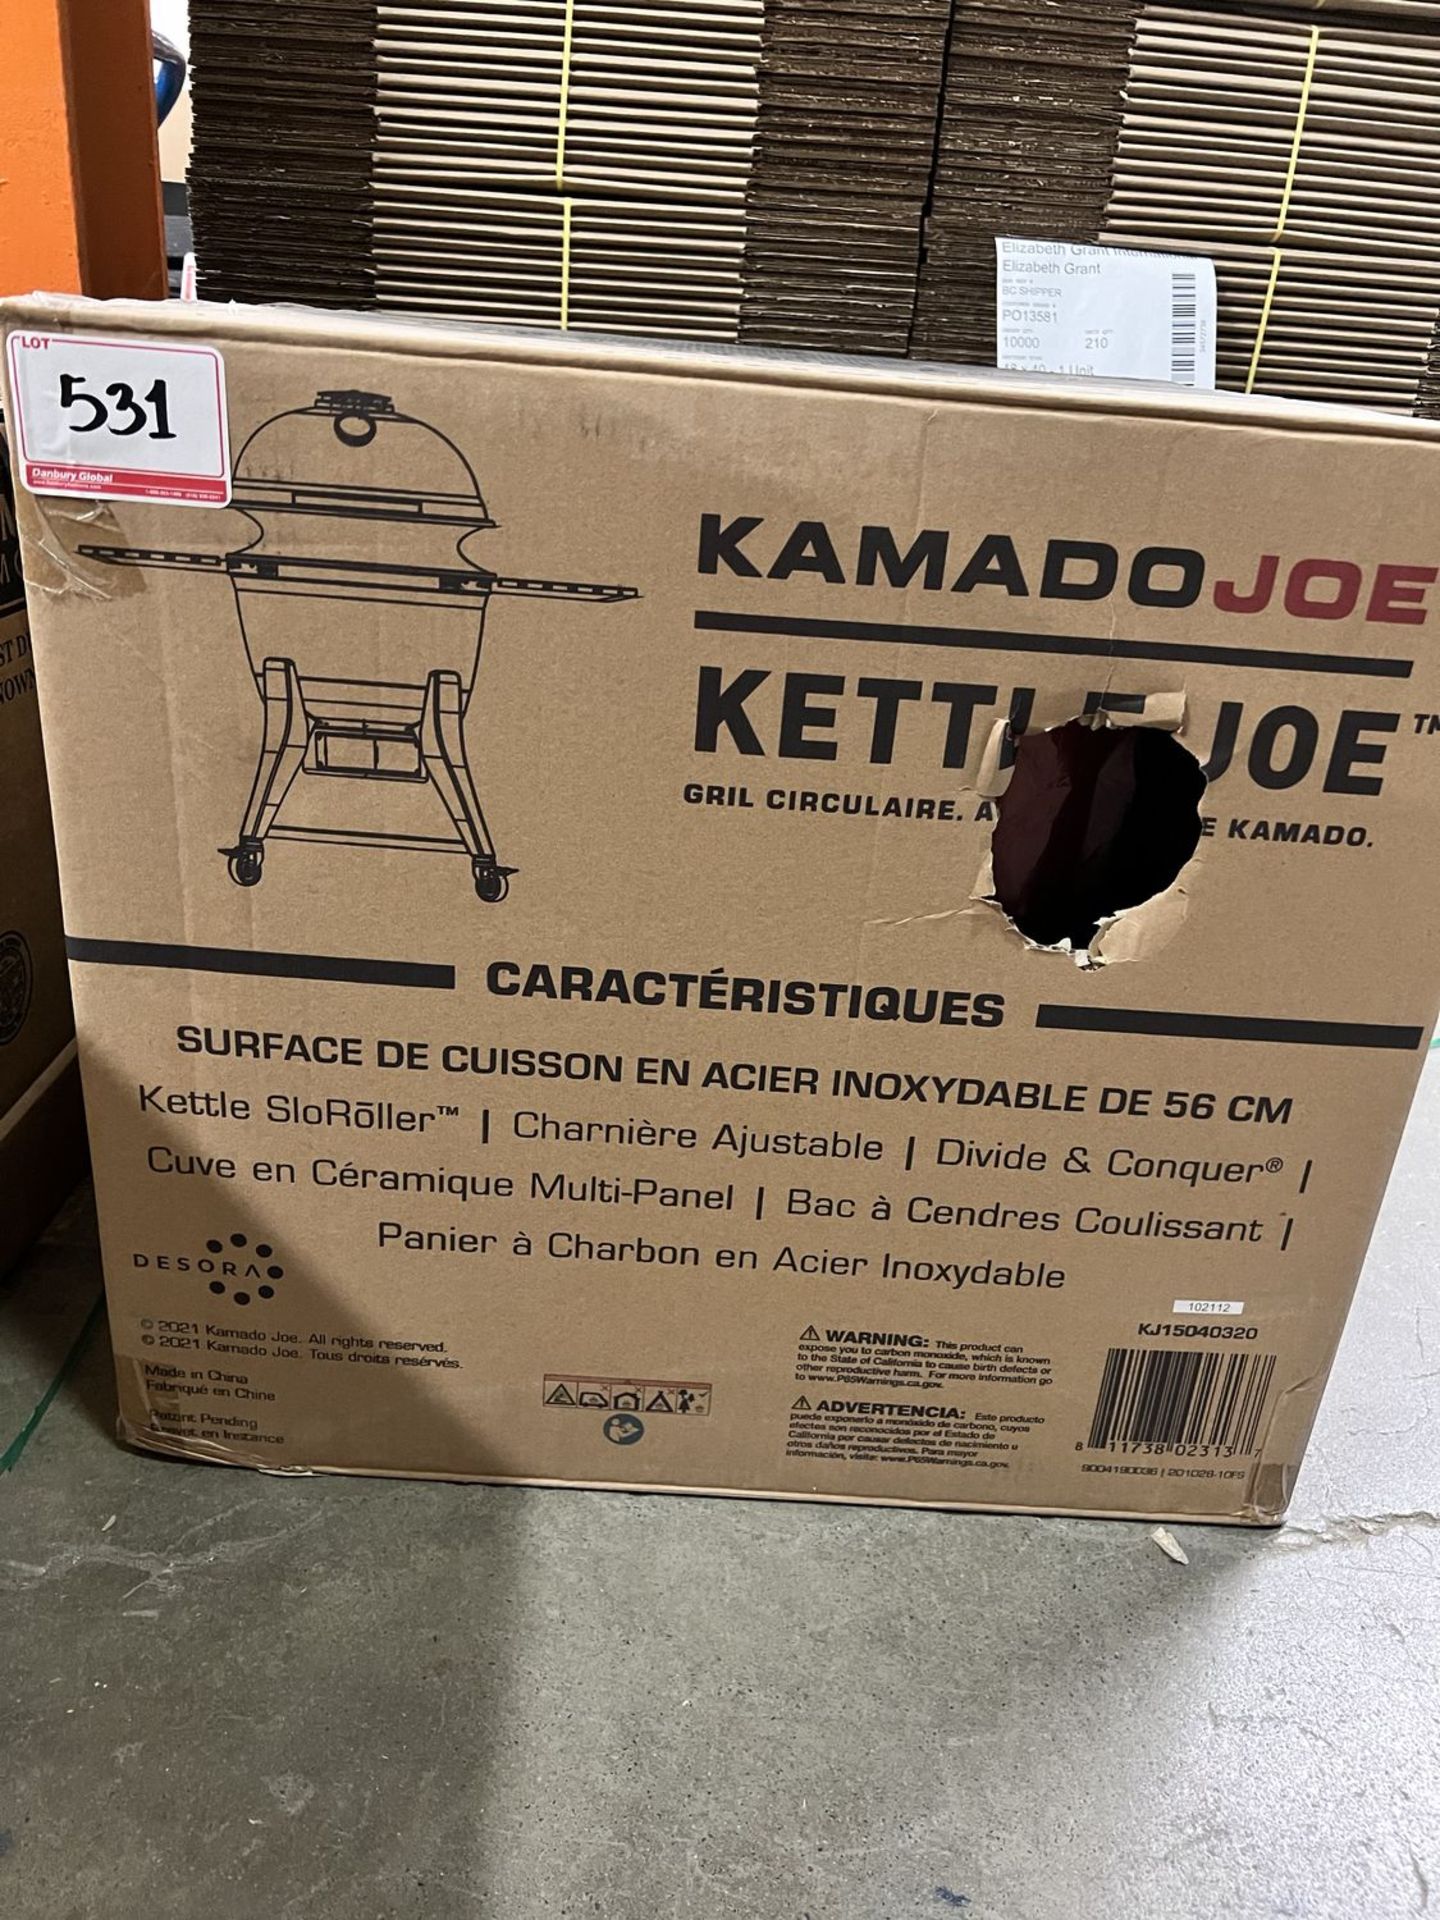 KAMADO JOE KETTLE JOE 22" STAINLESS STEEL COOKING SURFACE (MSRP $700)